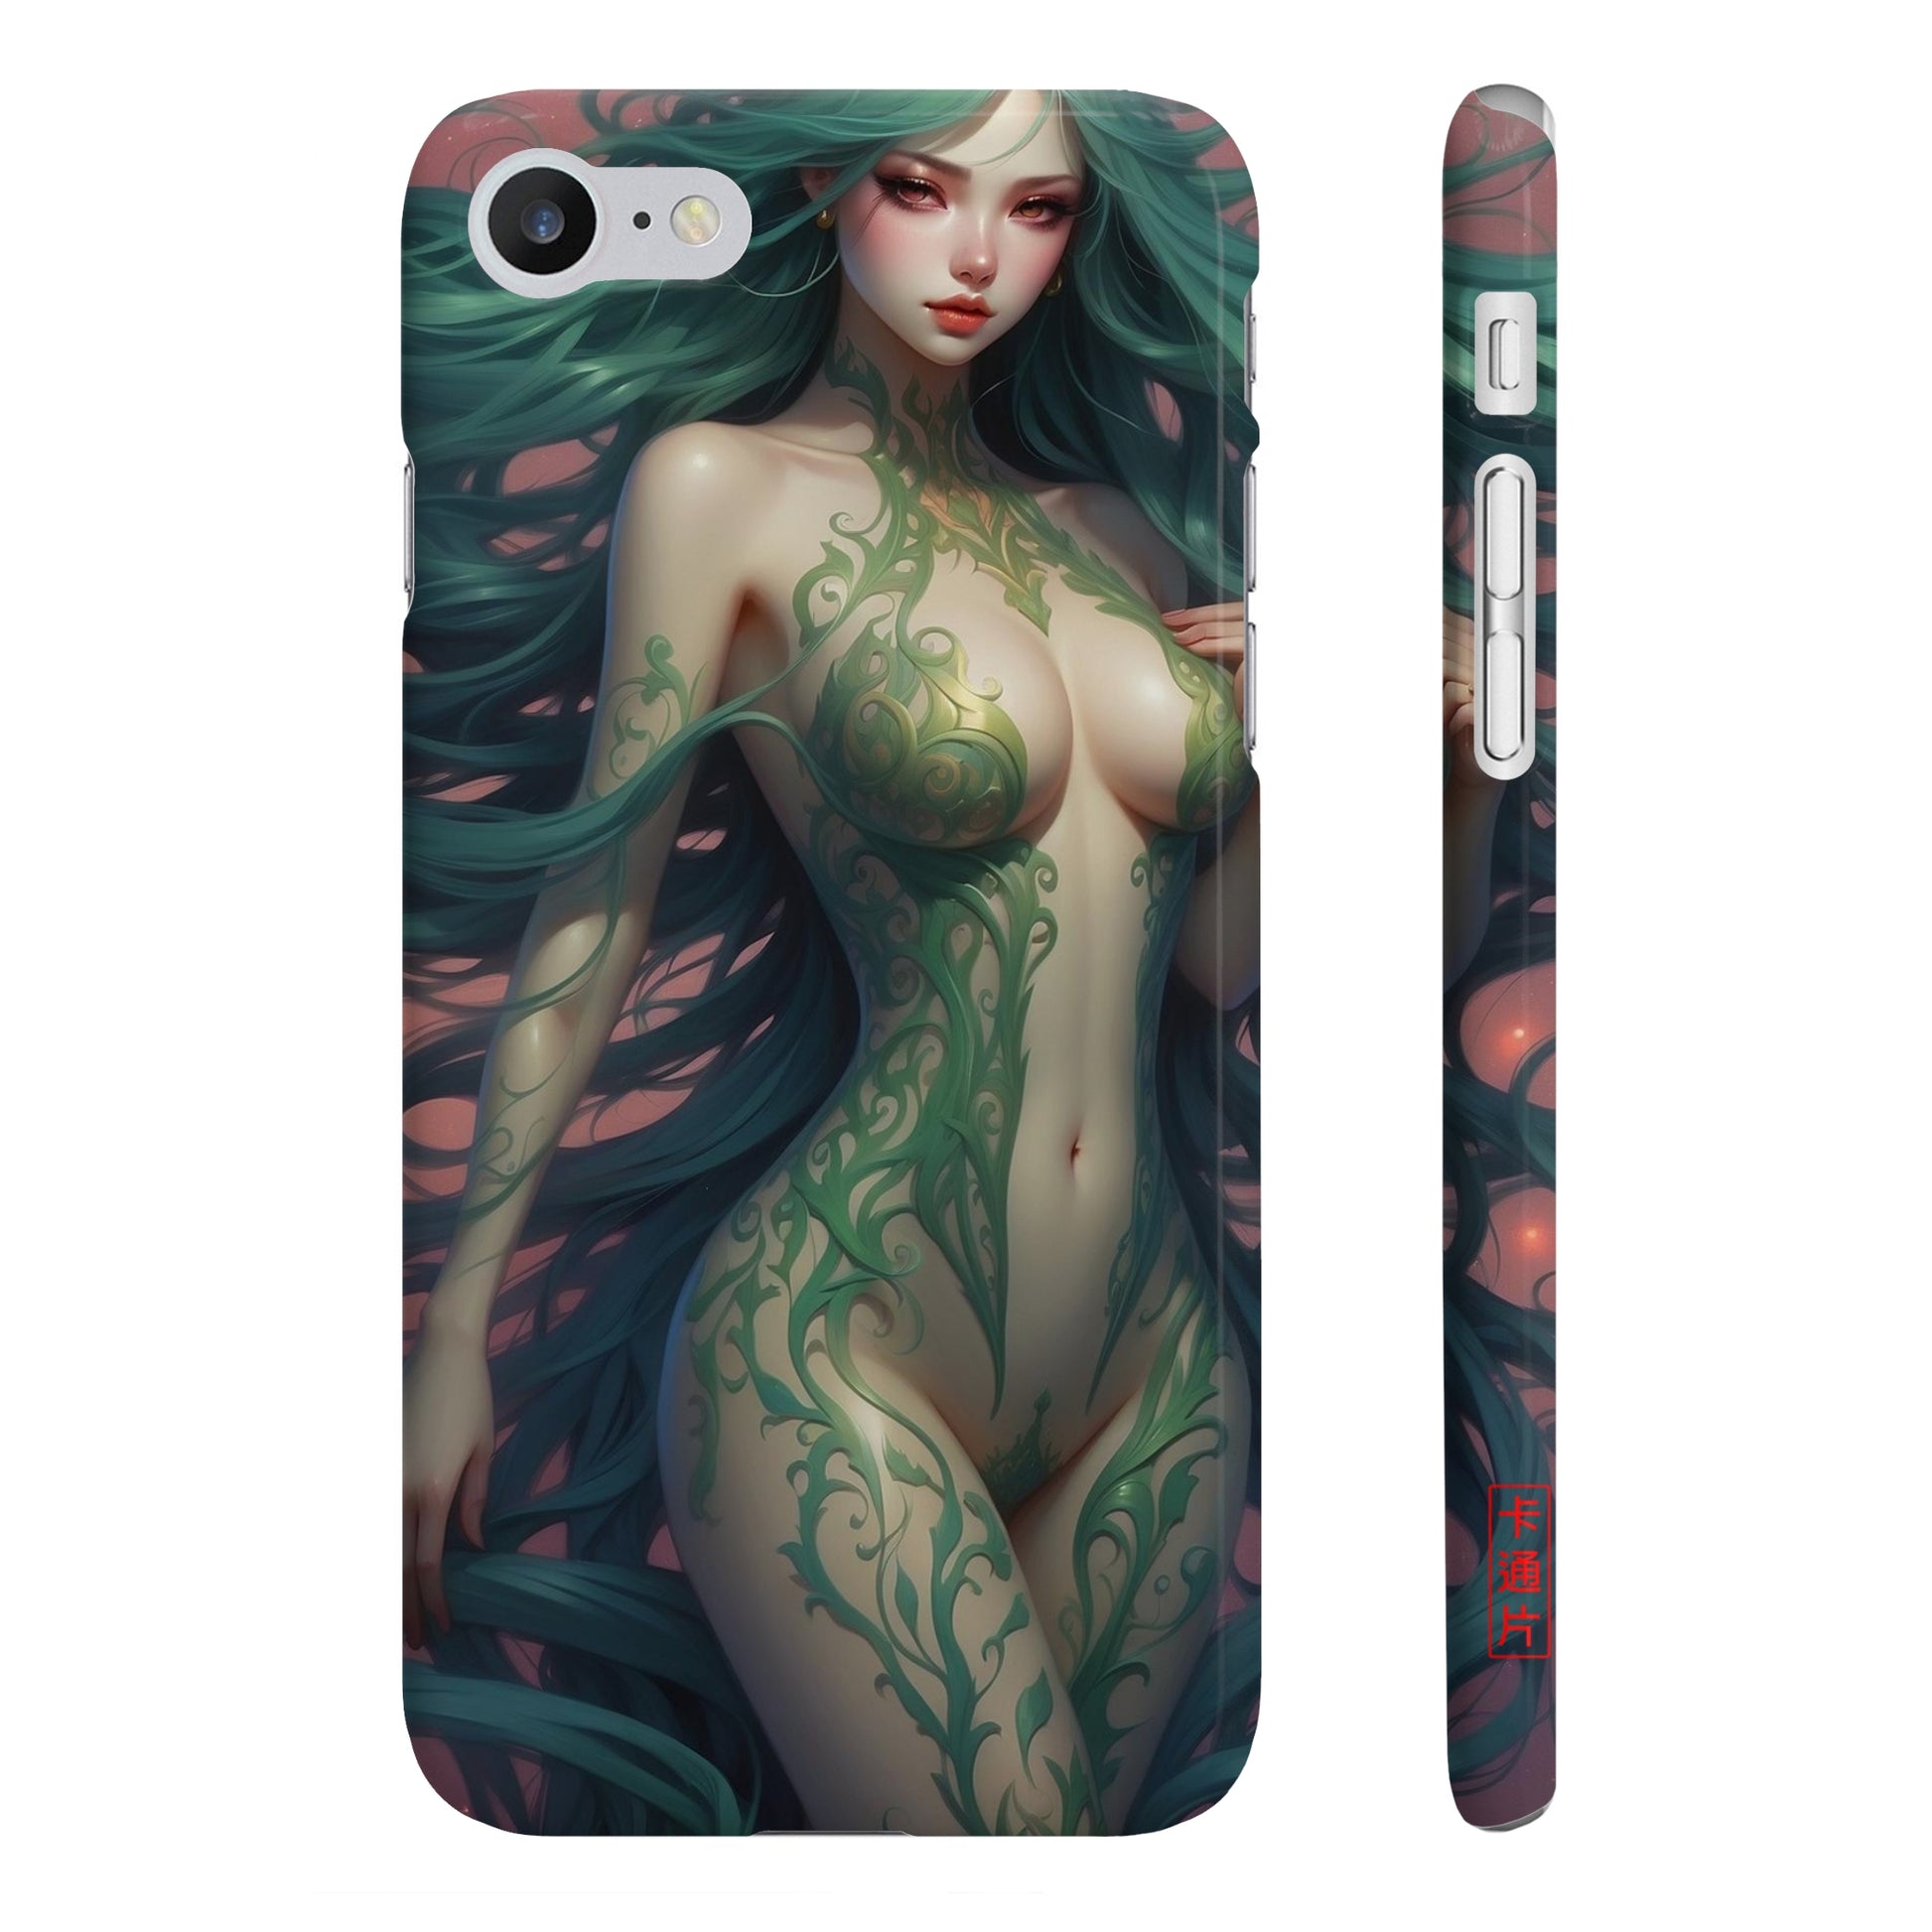 Kǎtōng Piàn - Mermaid Collection - 028 - Slim Phone Cases Printify